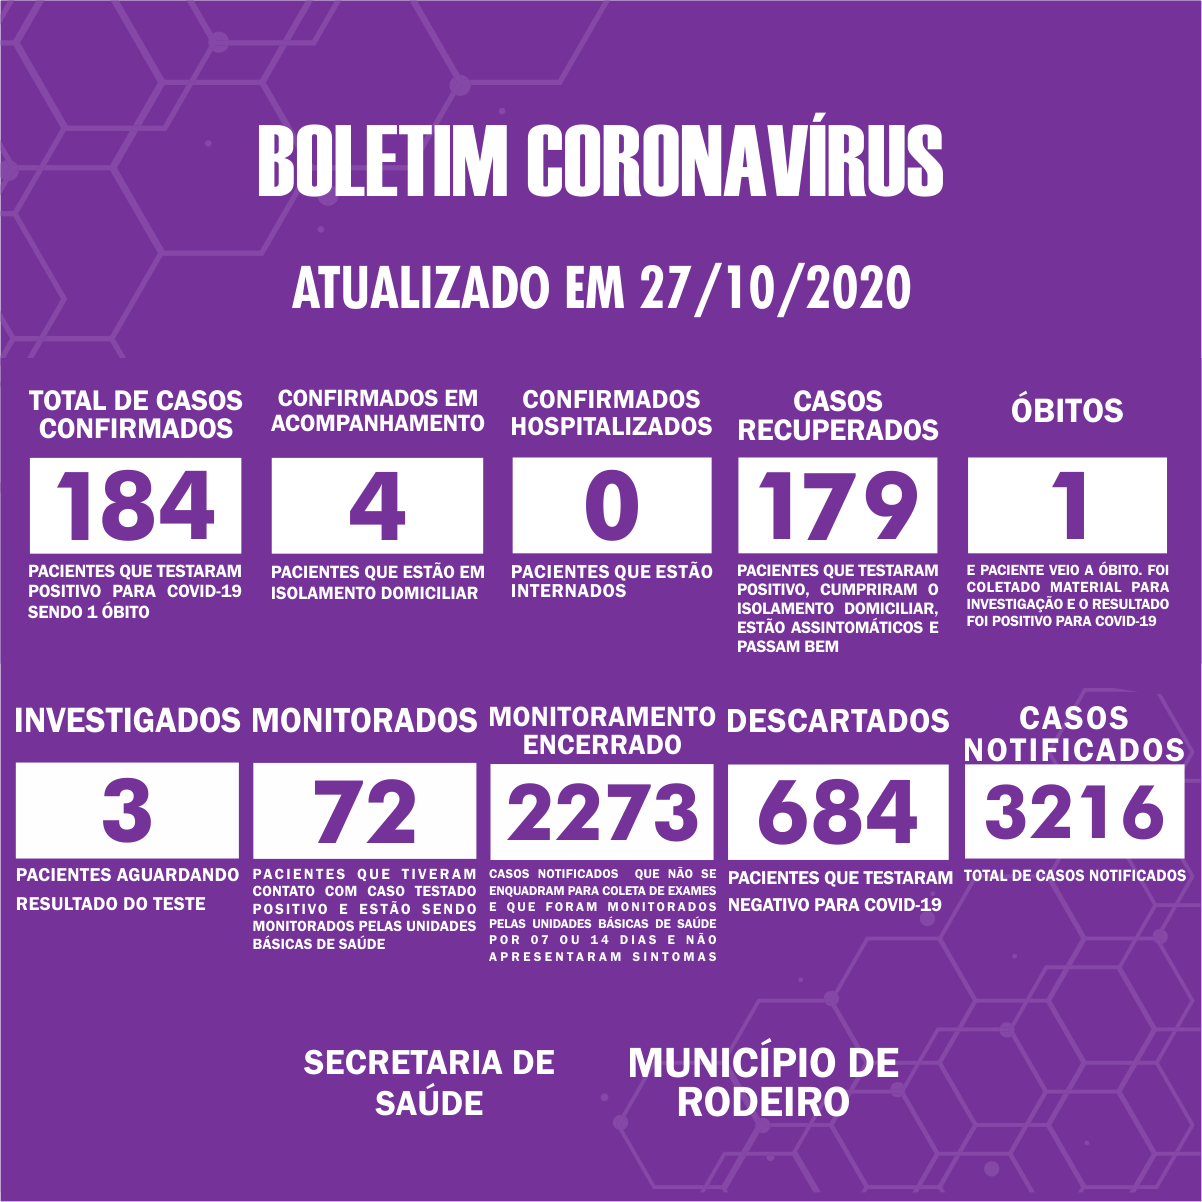 Boletim Epidemiológico do Município de Rodeiro sobre coronavírus, atualizado em 27/10/2020